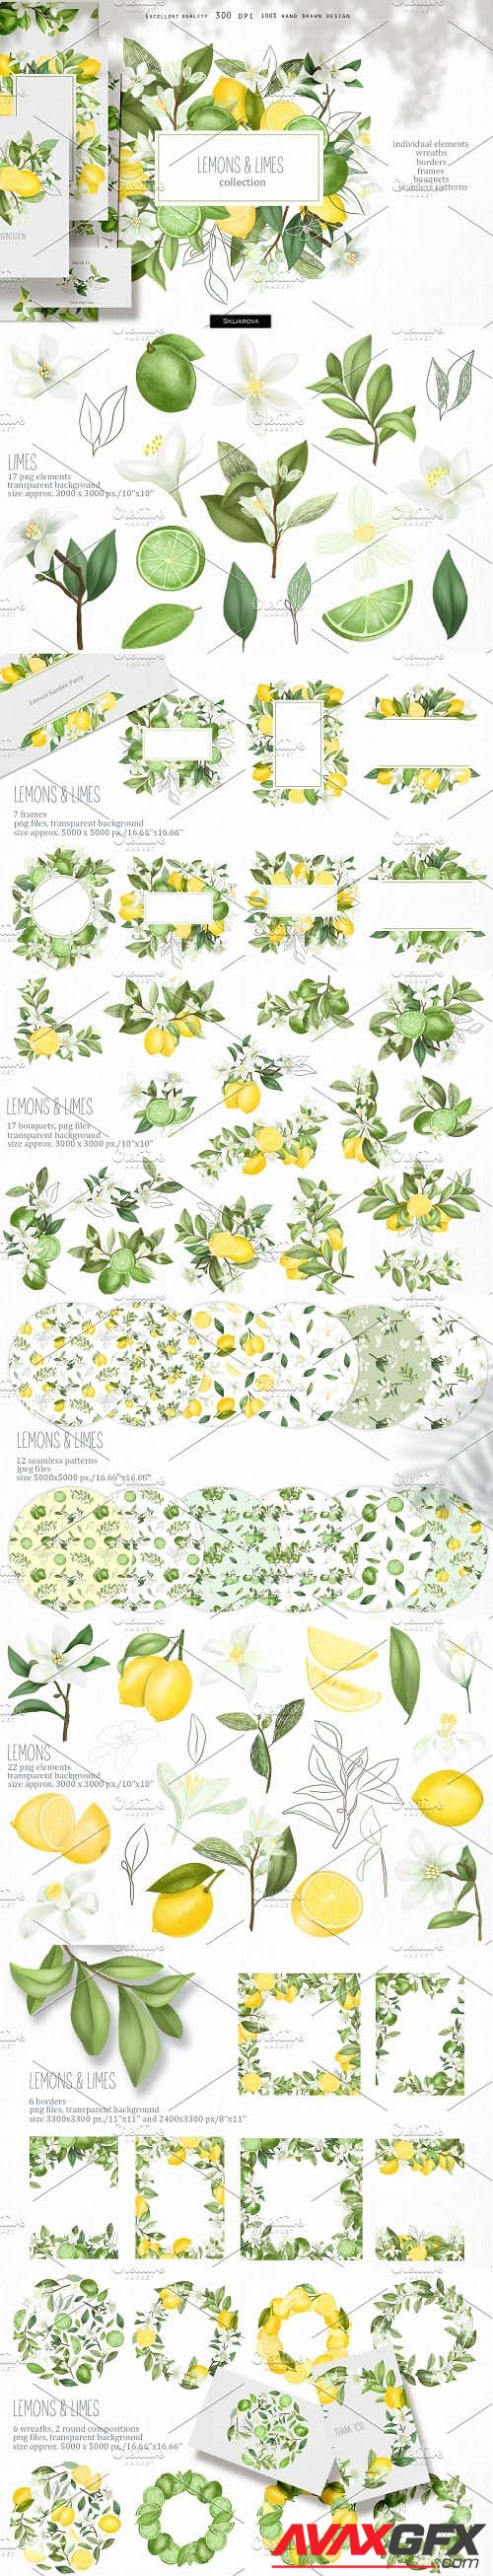 Lemons & limes collection - 4609745